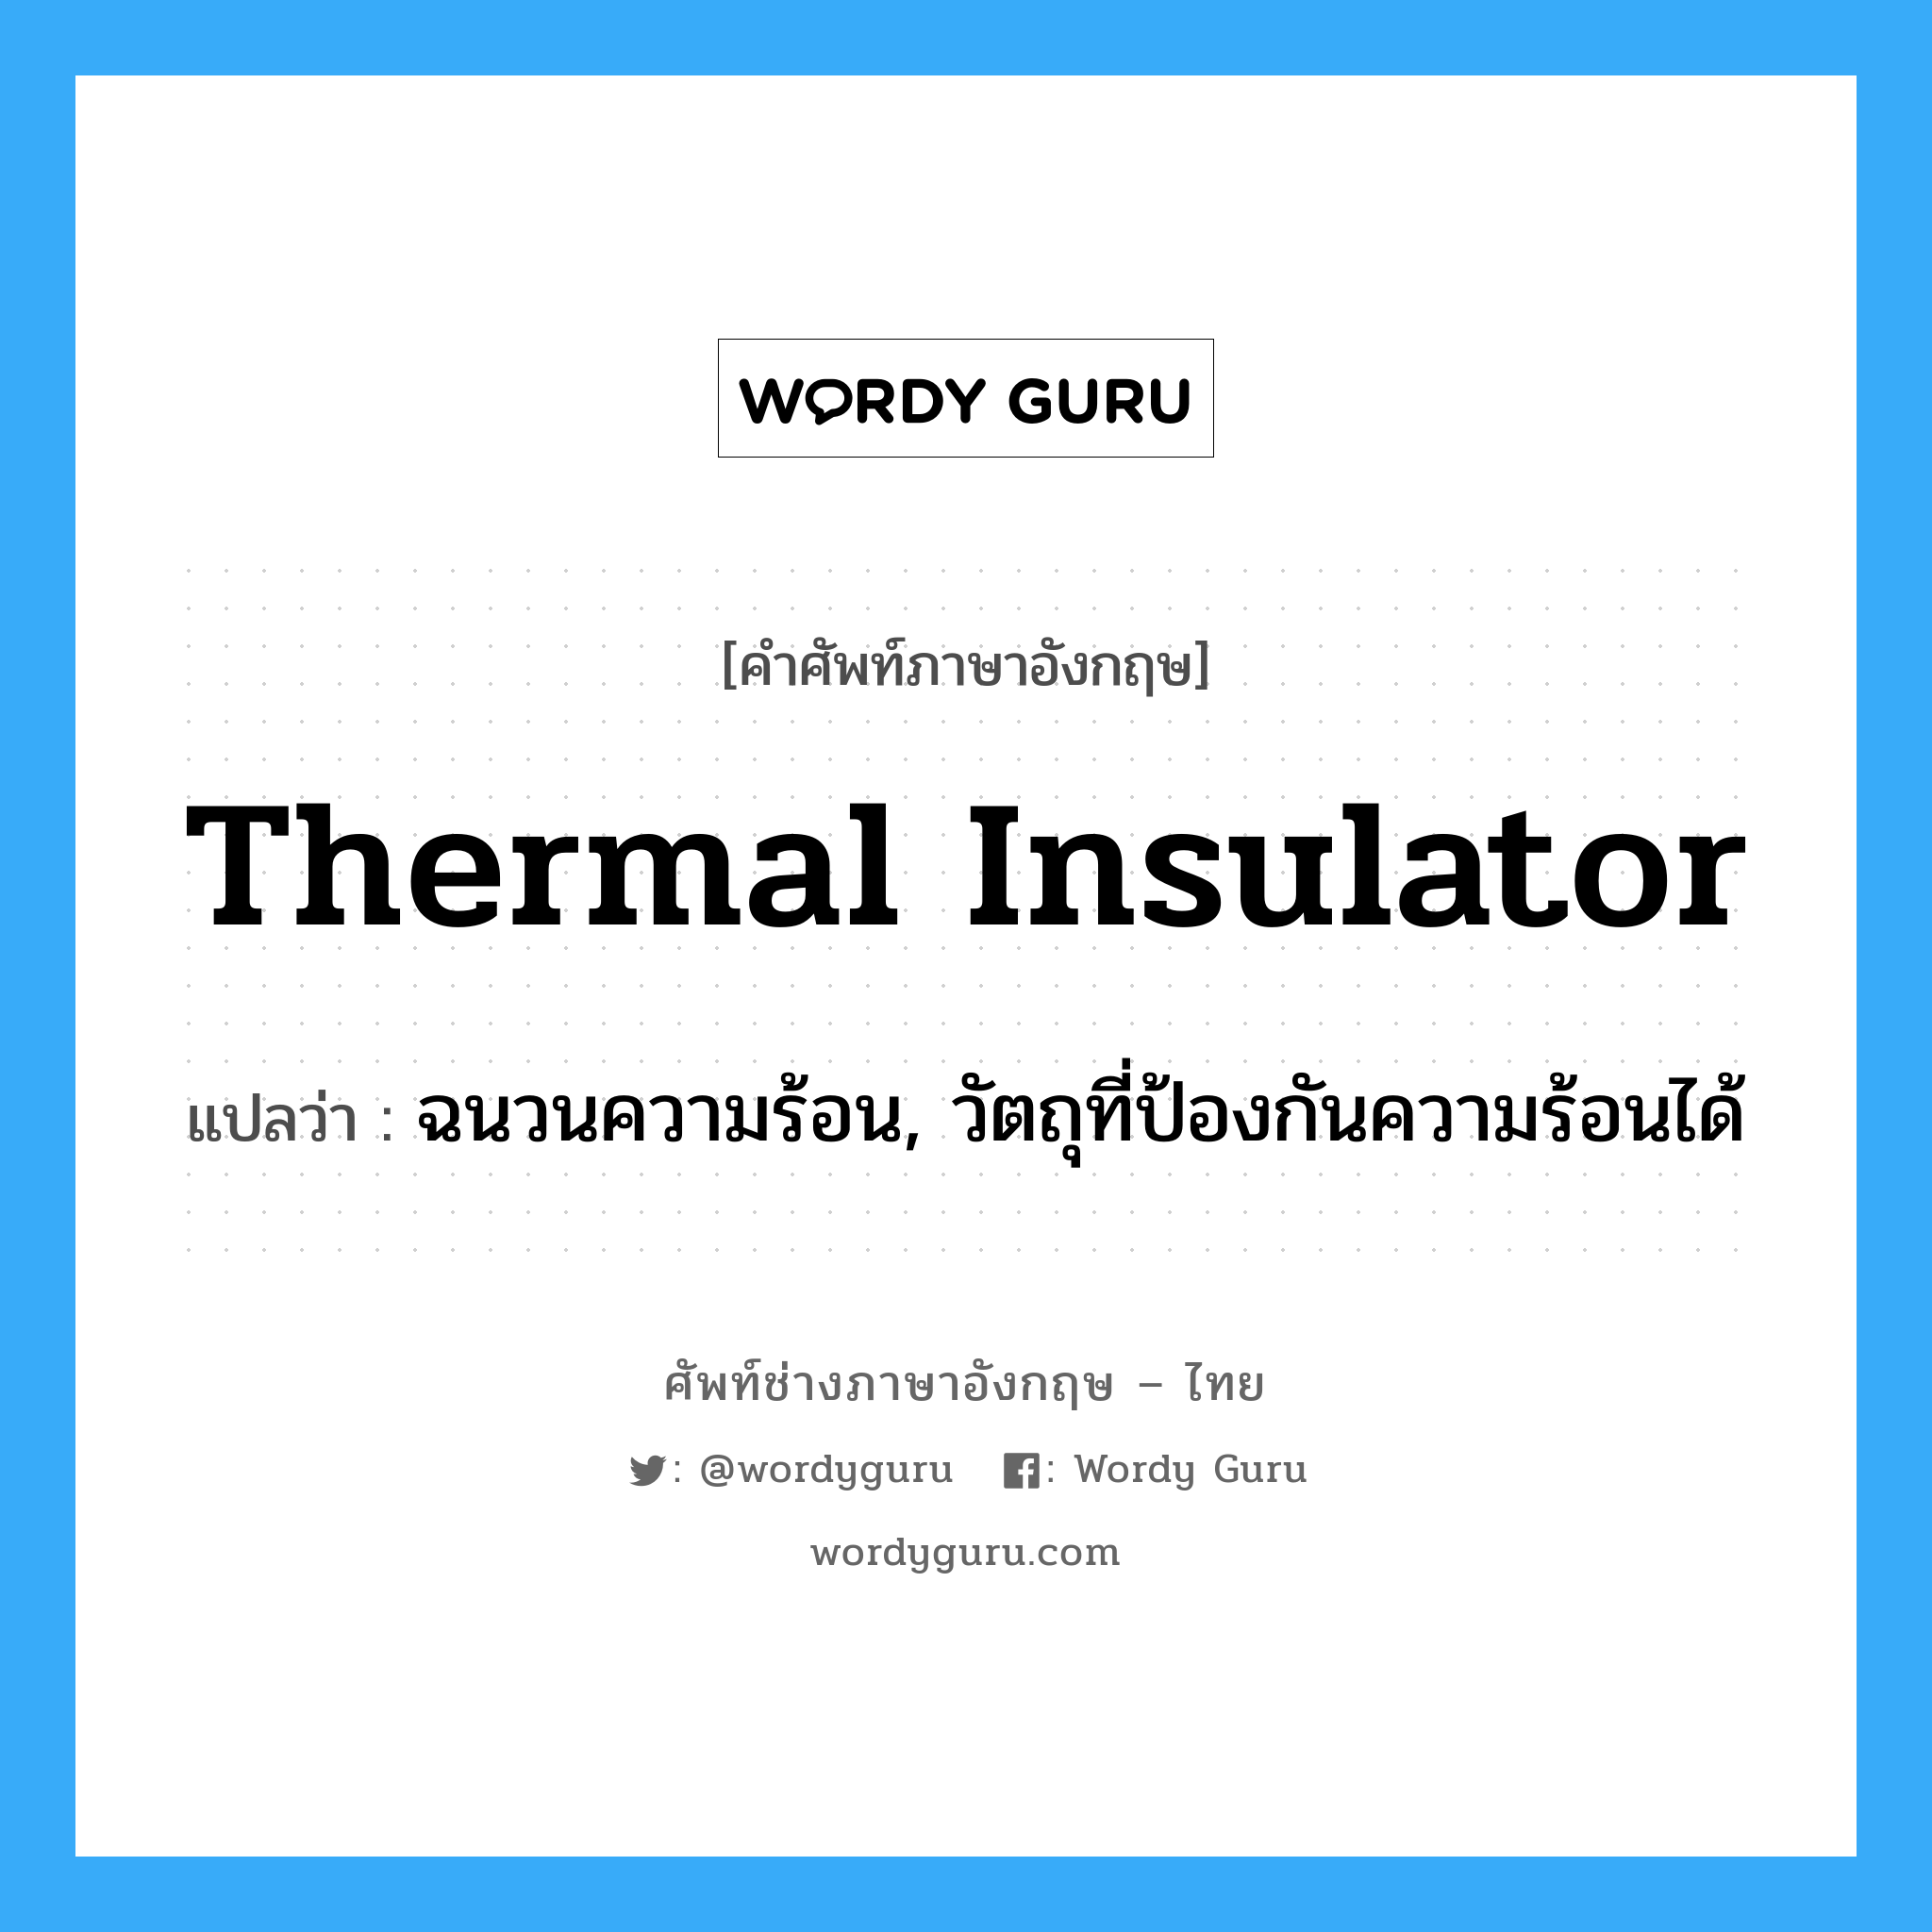 ฉนวนความร้อน, วัตถุที่ป้องกันความร้อนได้ ภาษาอังกฤษ?, คำศัพท์ช่างภาษาอังกฤษ - ไทย ฉนวนความร้อน, วัตถุที่ป้องกันความร้อนได้ คำศัพท์ภาษาอังกฤษ ฉนวนความร้อน, วัตถุที่ป้องกันความร้อนได้ แปลว่า thermal insulator